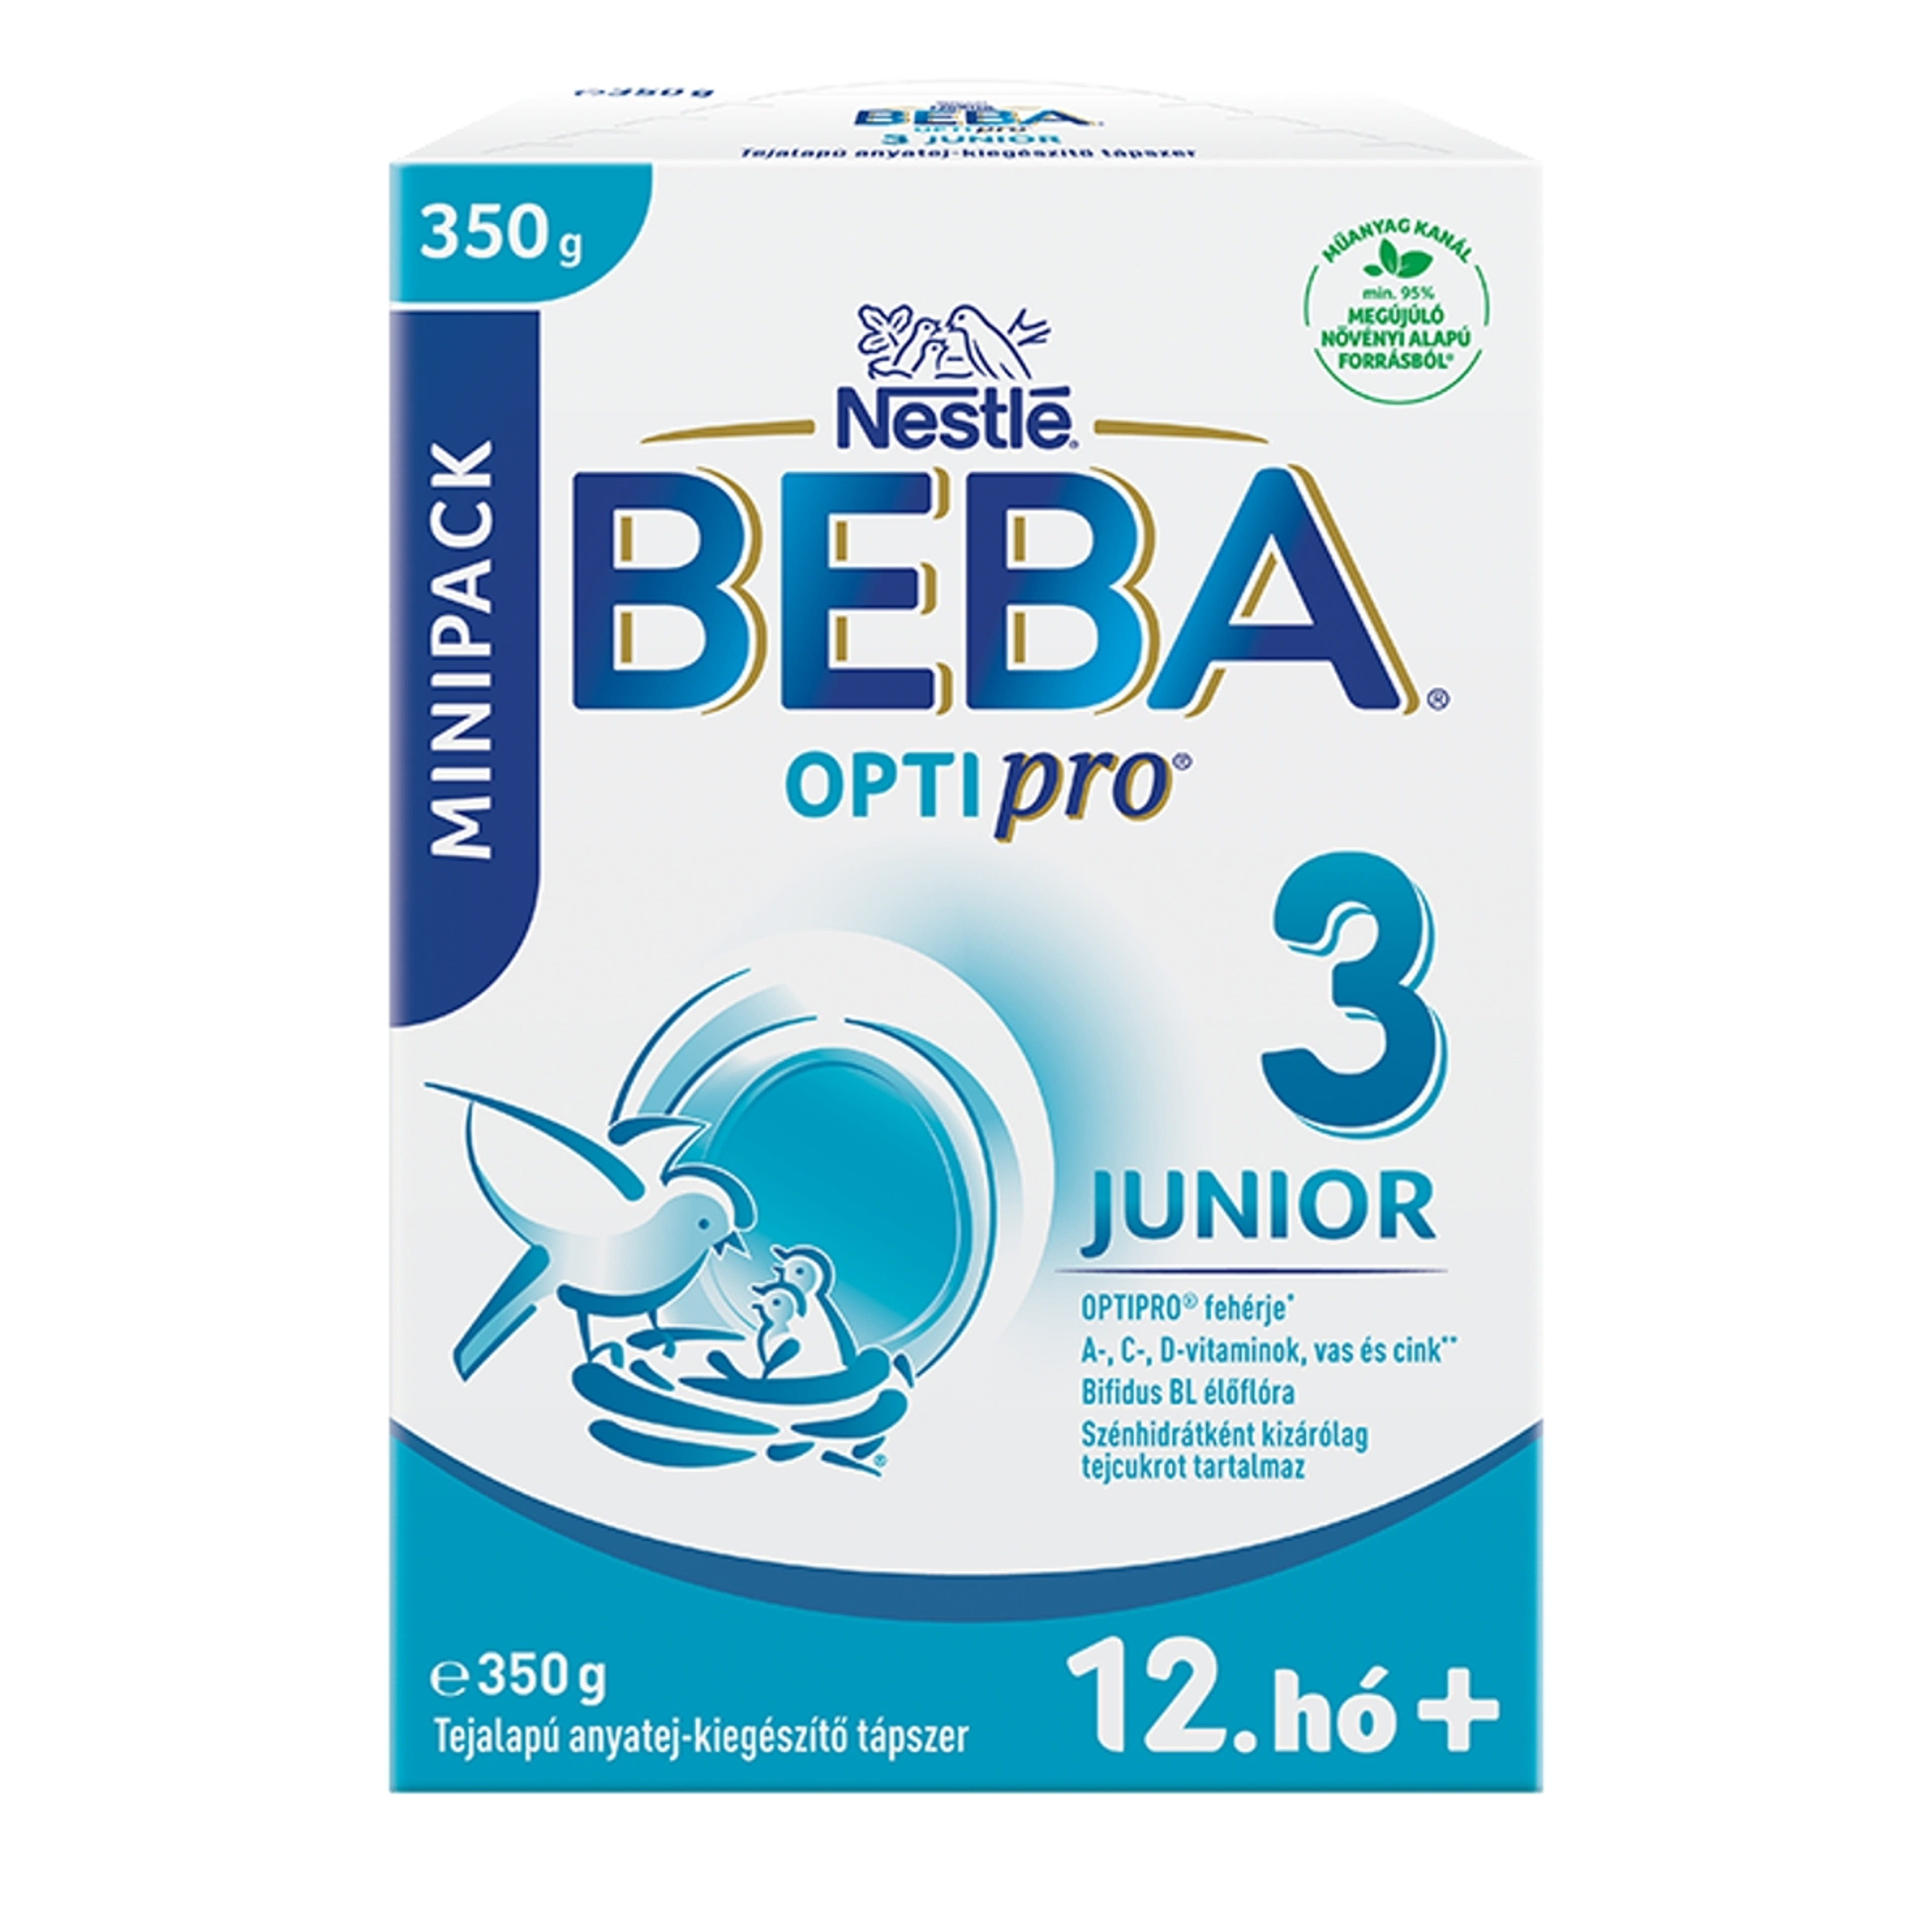 BEBA OPTIPRO Junior 3 tejalapú anyatej-kiegészítő tápszer 12. hónapos kortól - 350 g